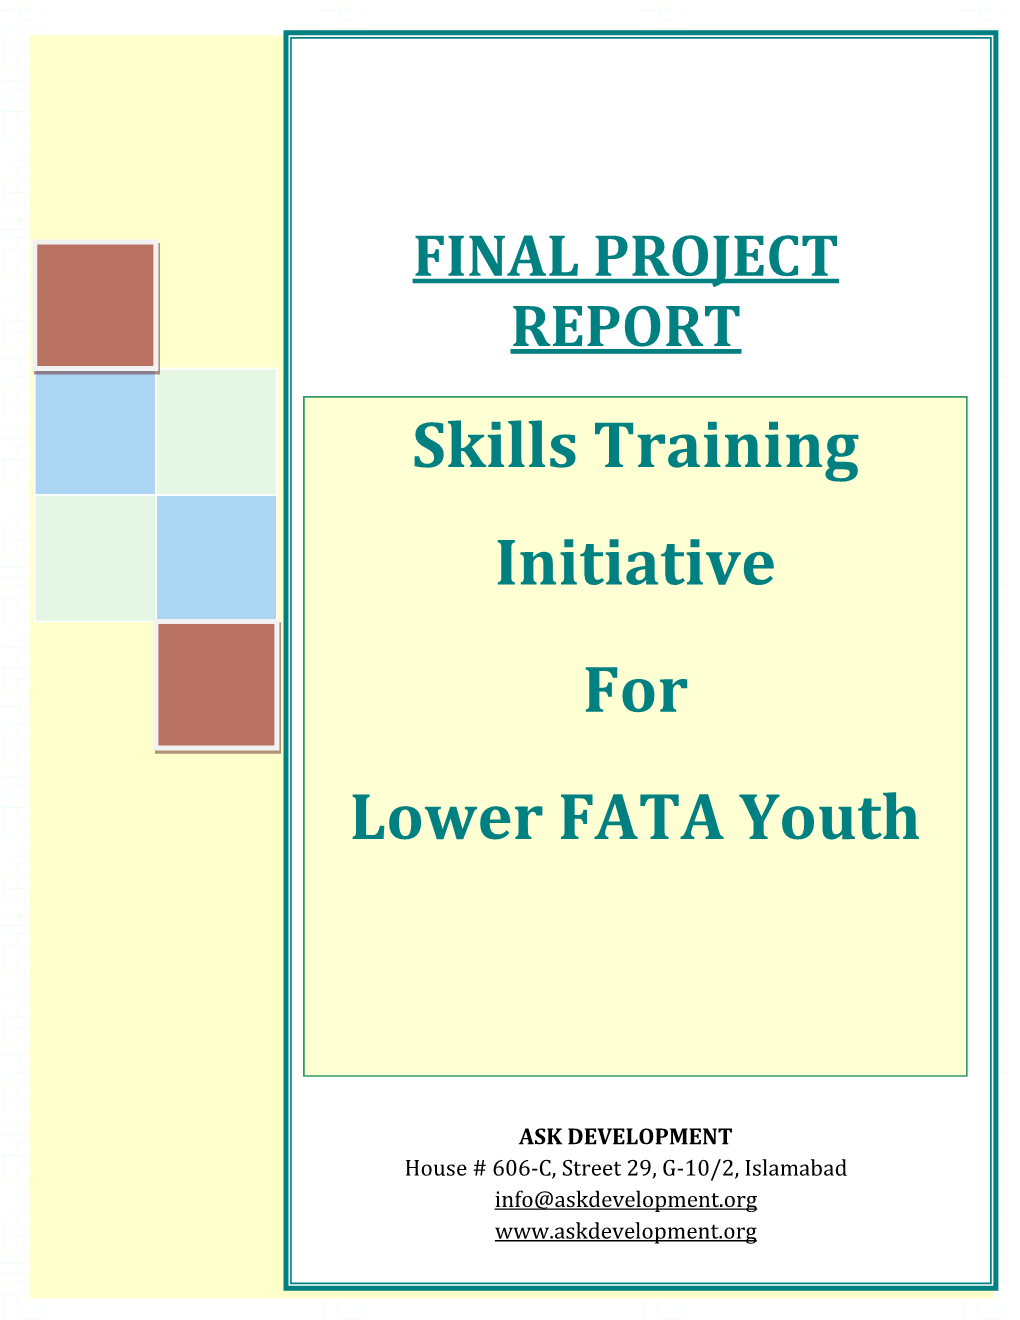 Apprenticeship Scheme for Lower FATA Youth